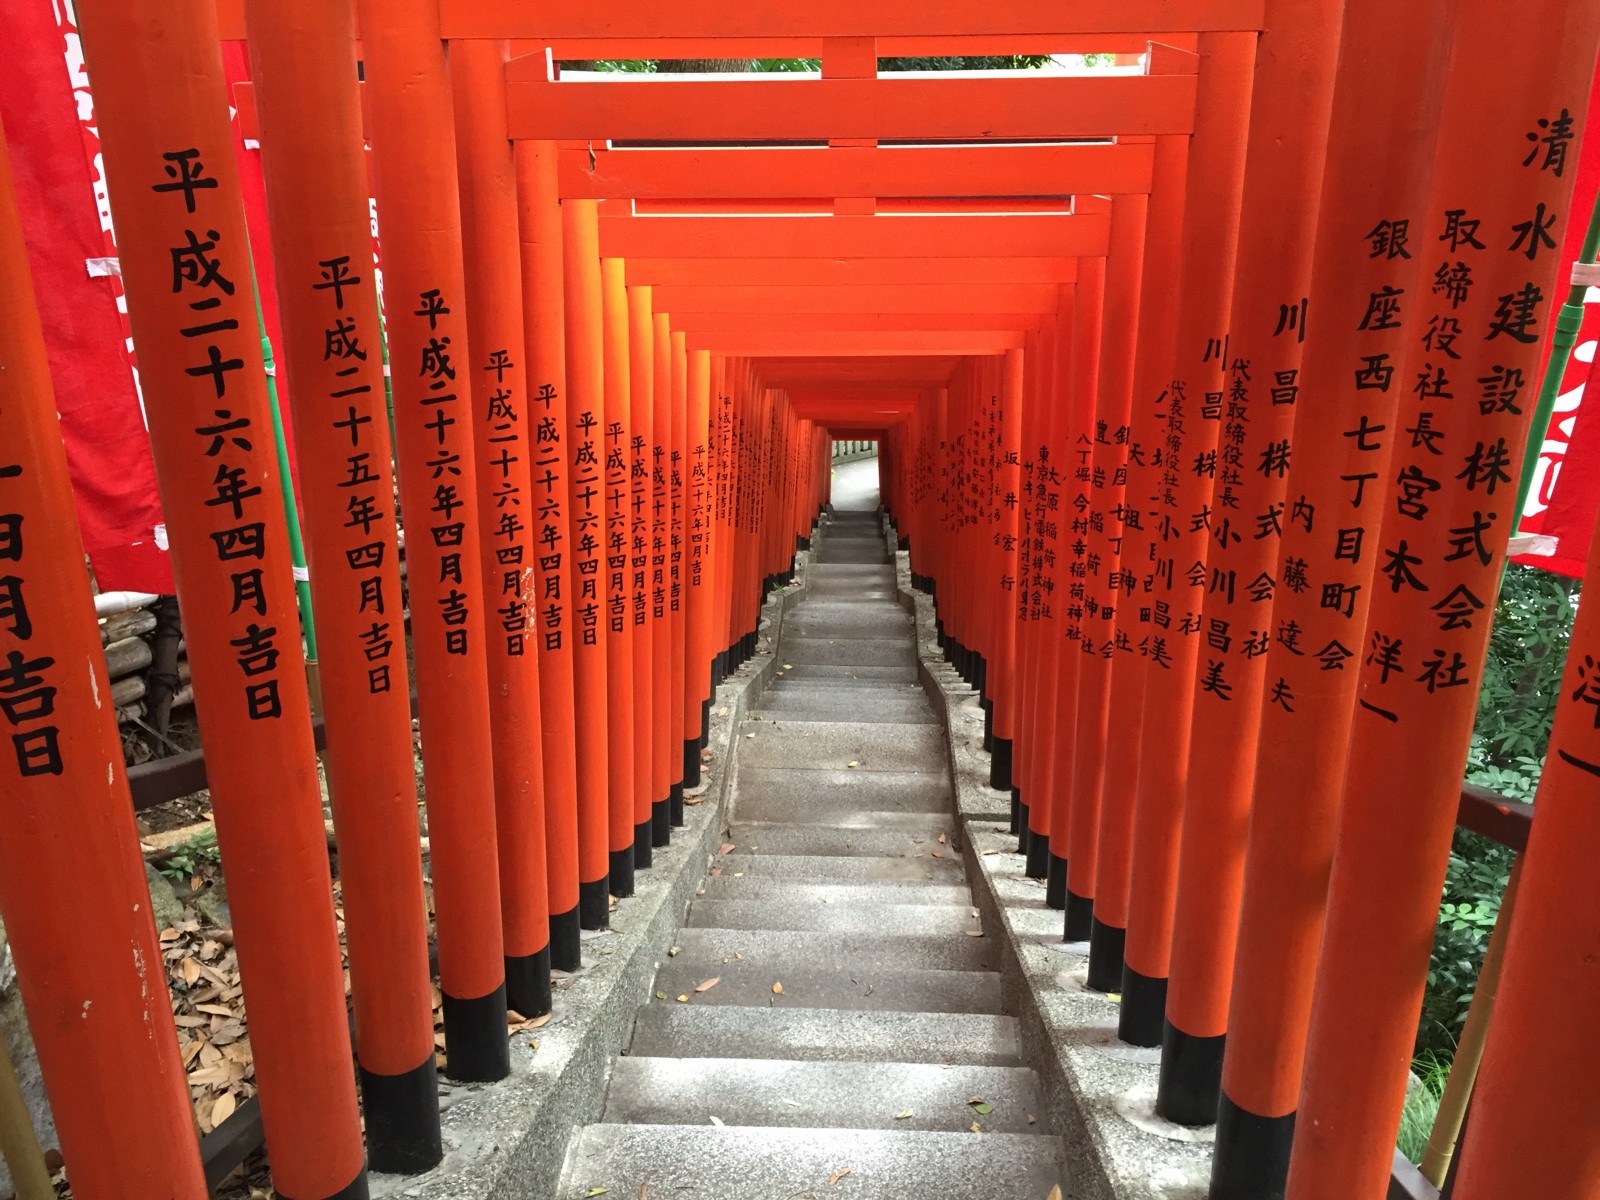 日枝神社：東京紅色鳥居門隧道隱藏神社